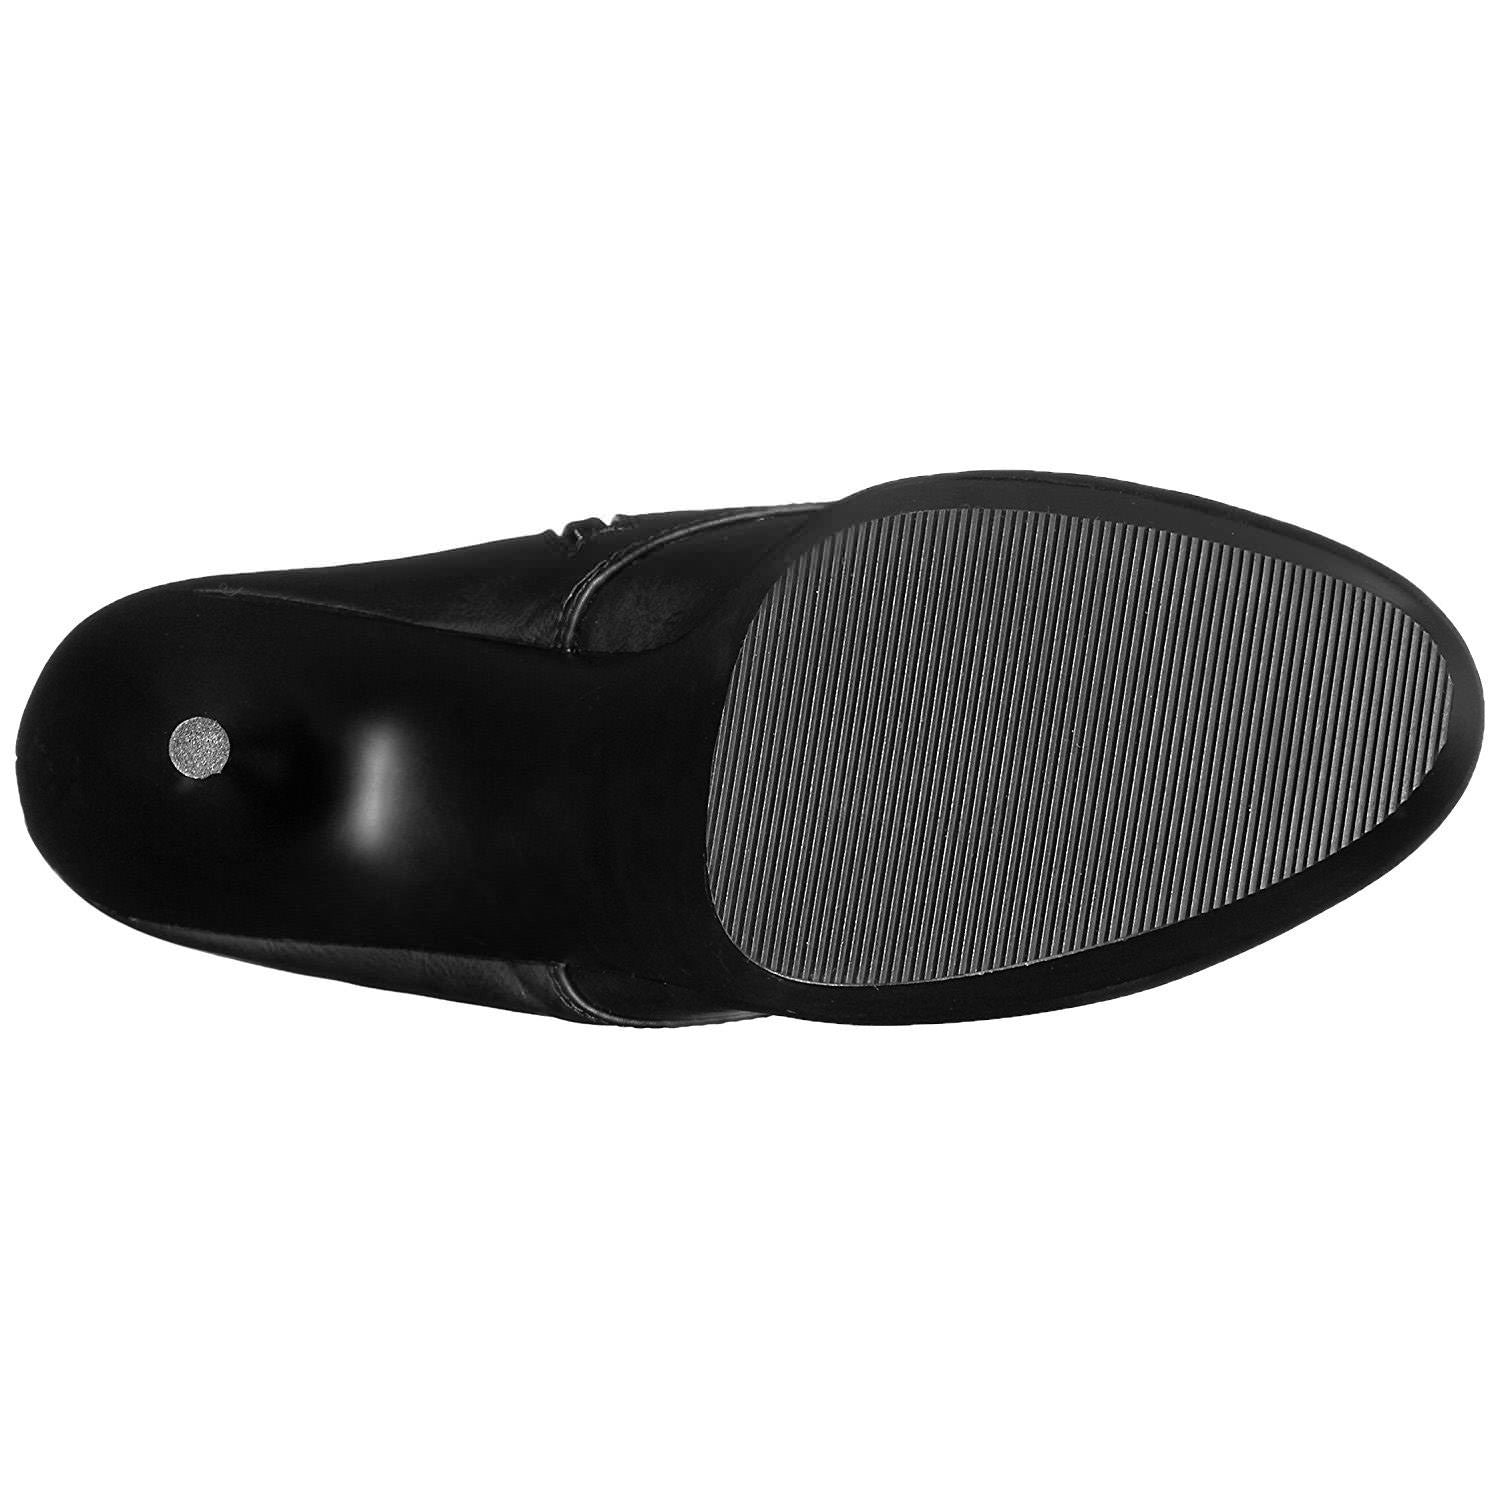 Pleaser DELIGHT-1020 Black Faux Leather Ankle Boots - Shoecup.com - 5